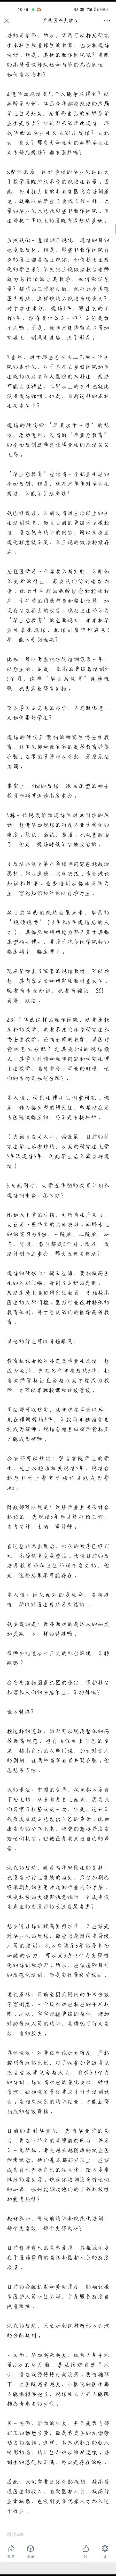 江苏血液中心库存跌破最低警戒线 江苏血液中心和南京红十字血液中心